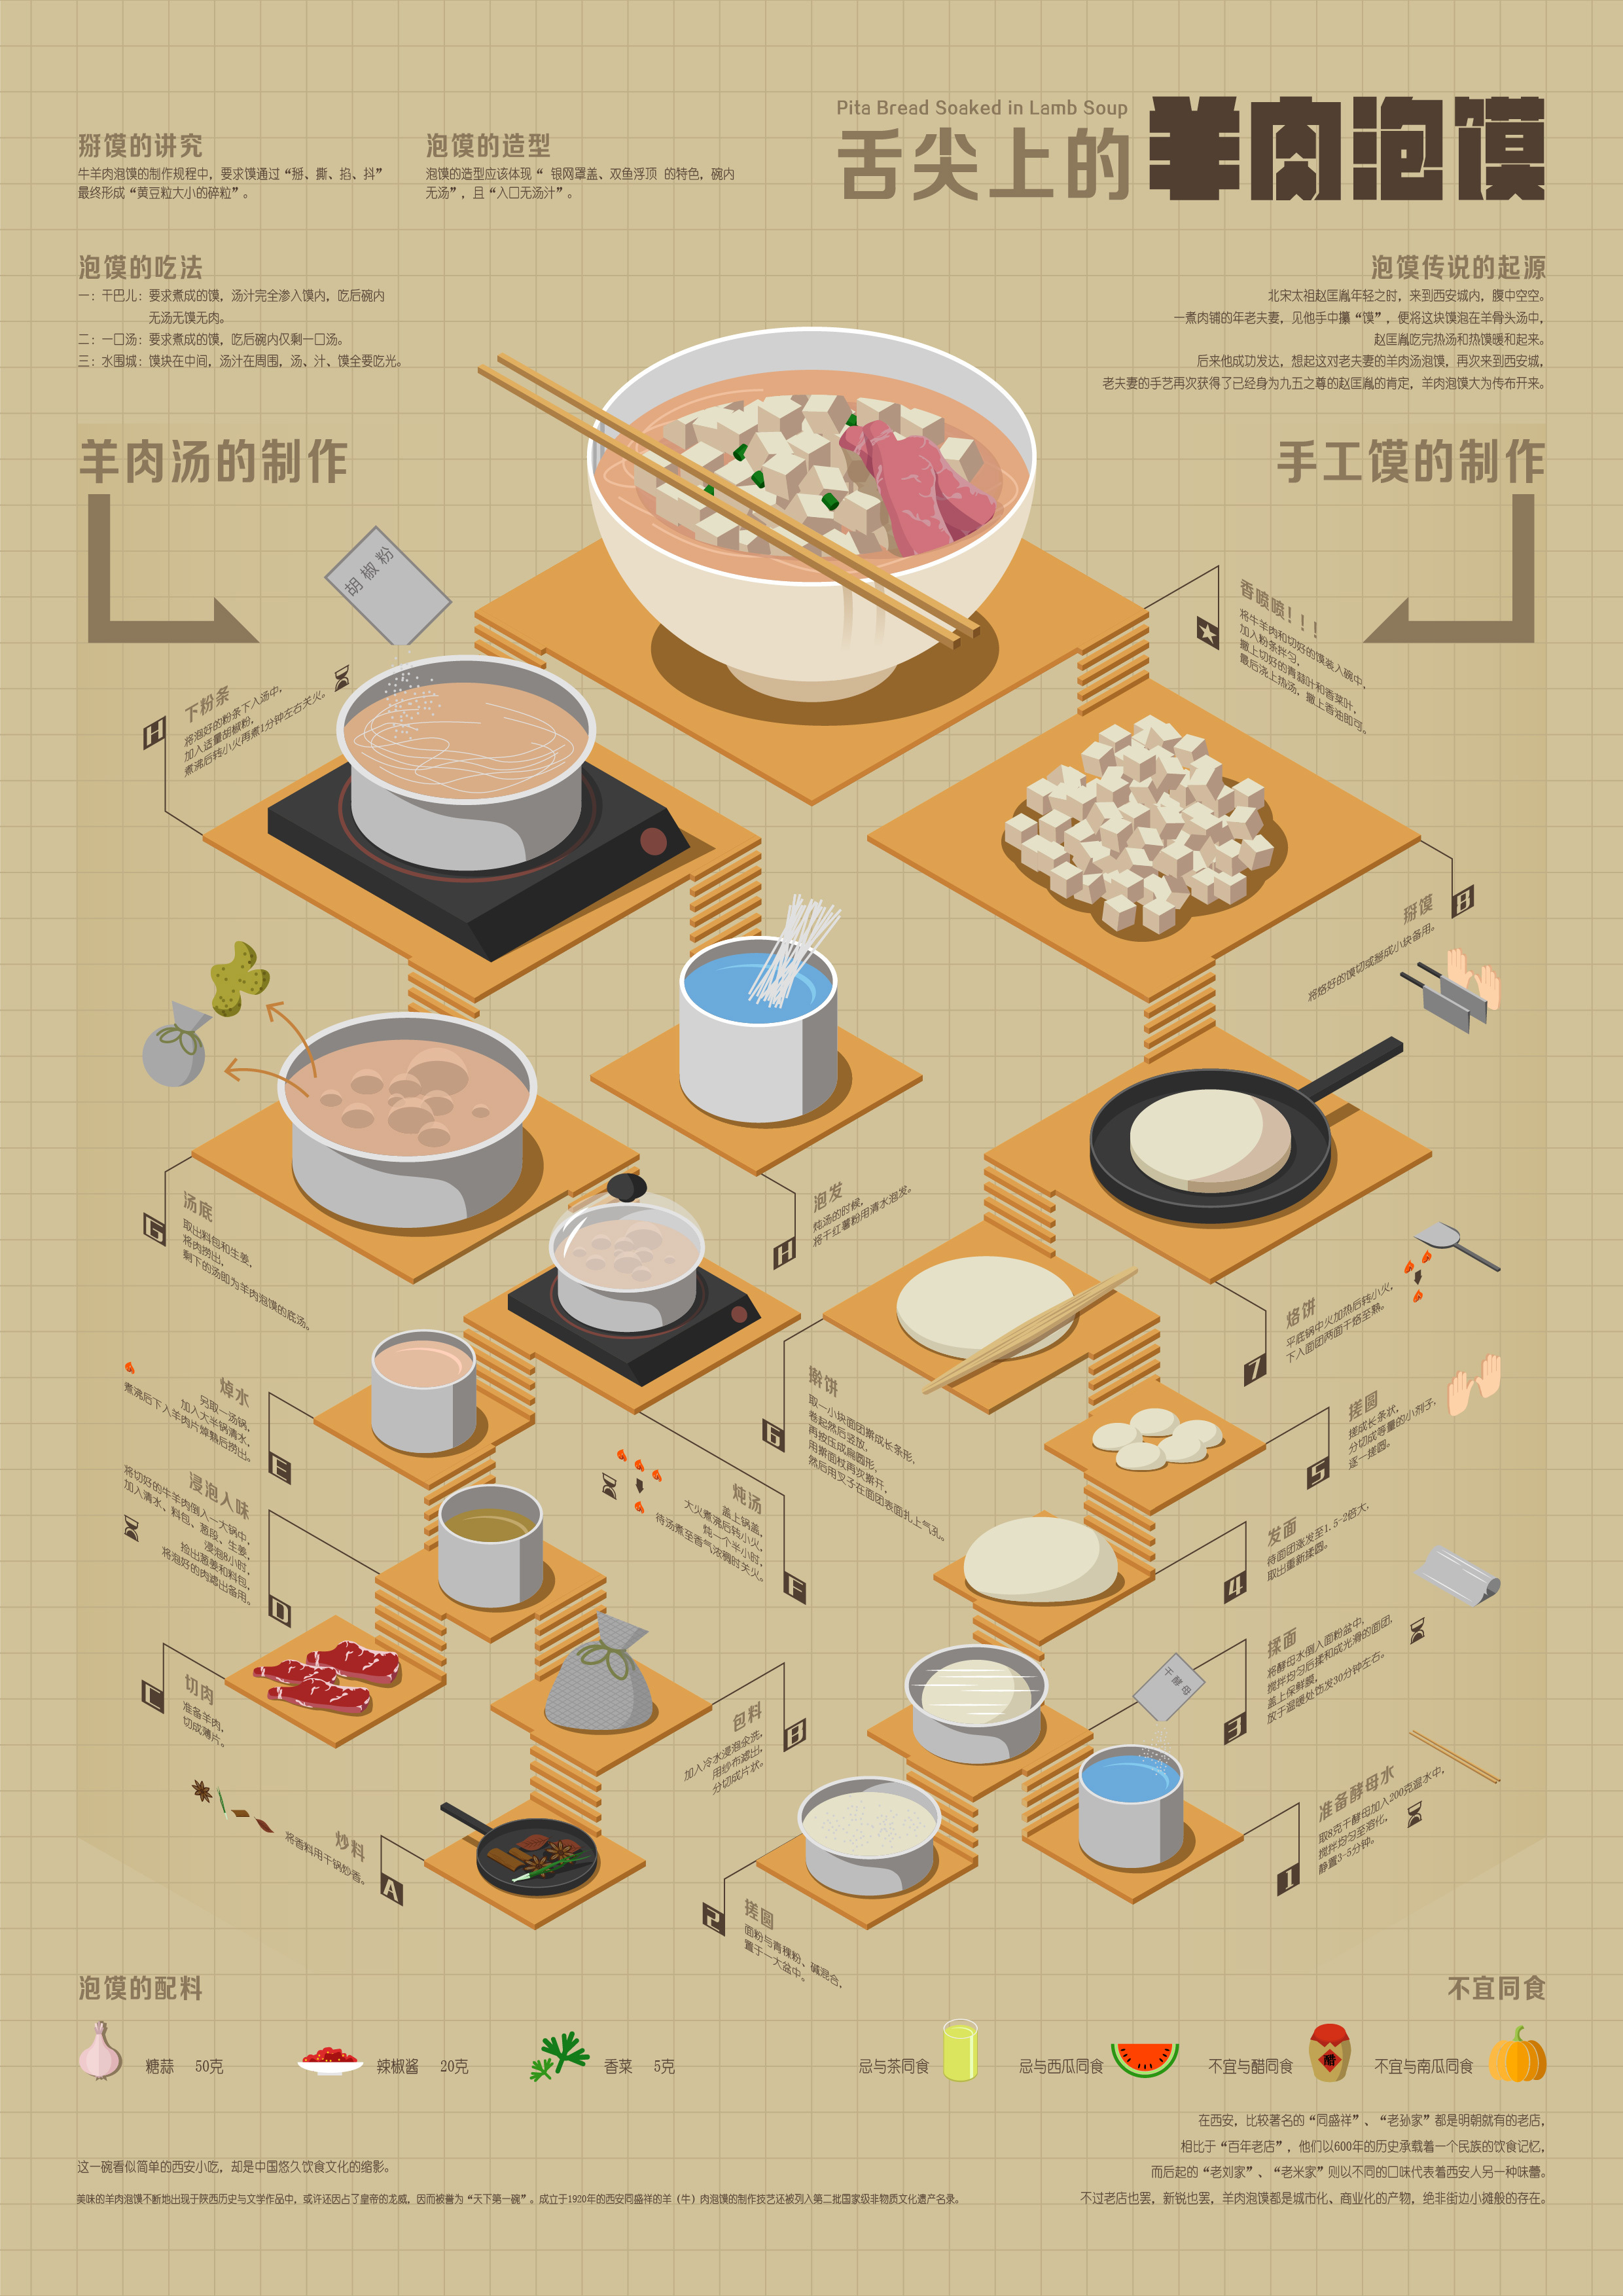 信息图表——西安美食